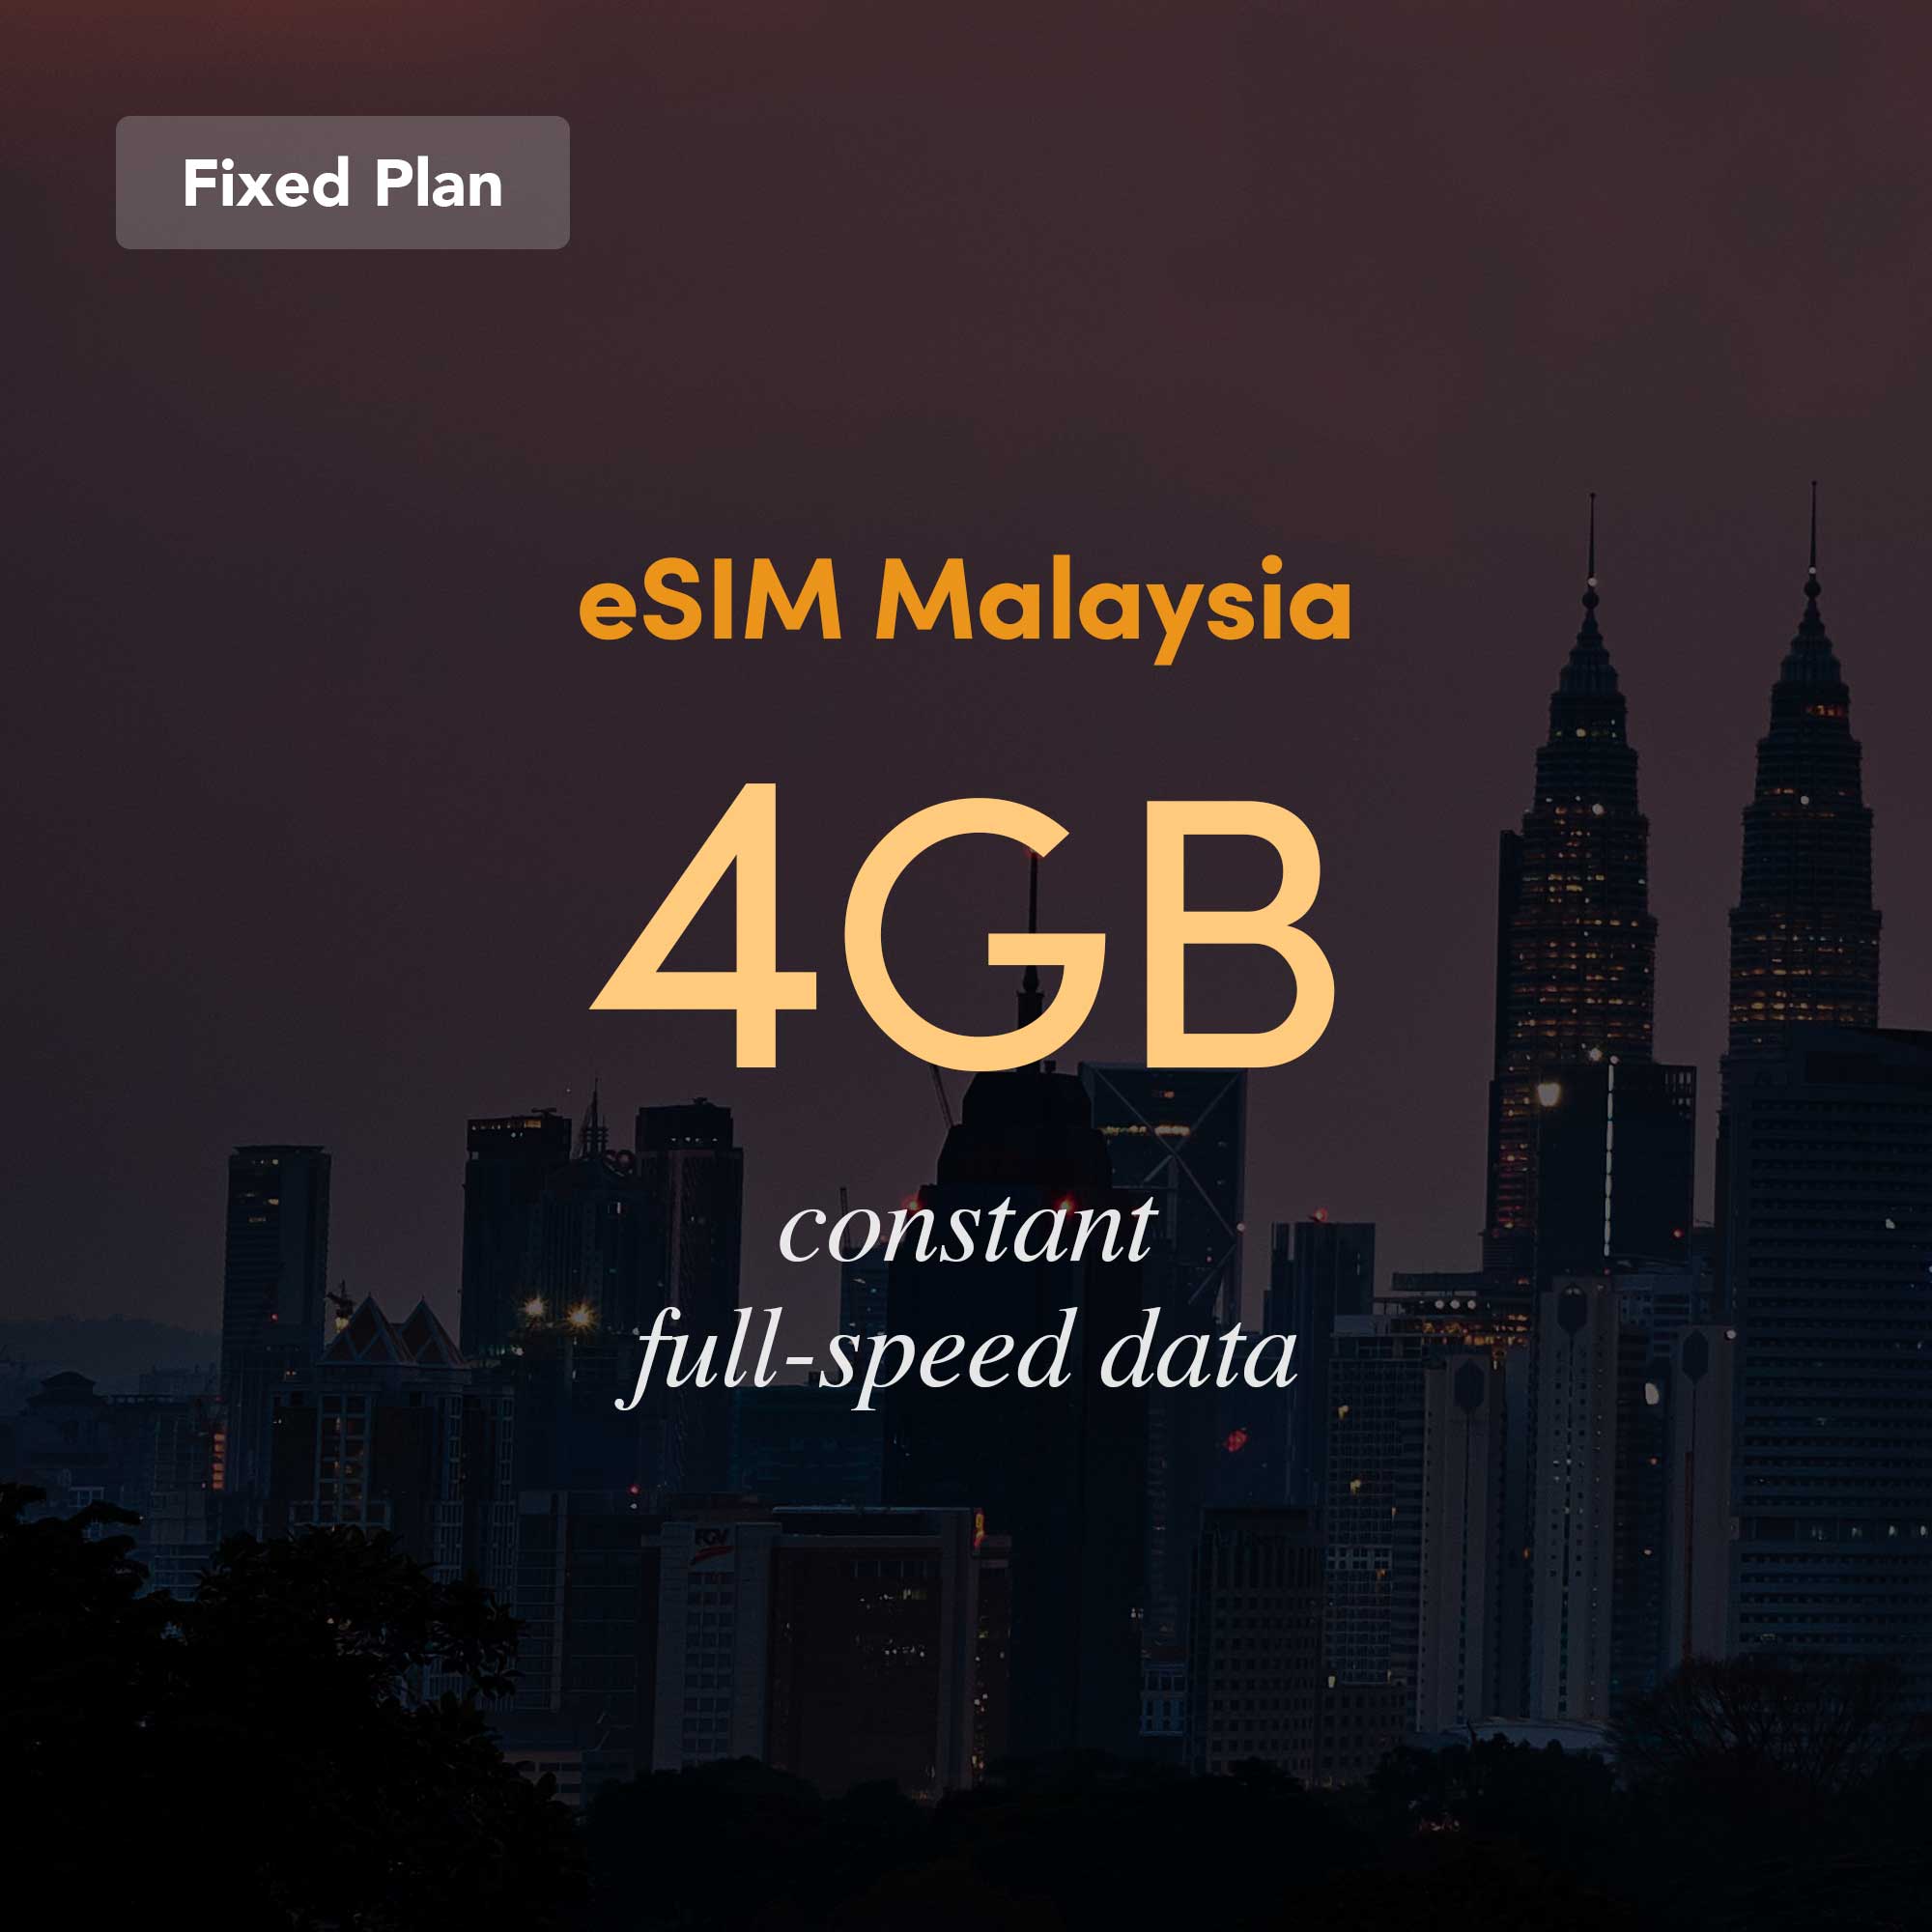 eSIM Malaysia Fixed Plan 4GB